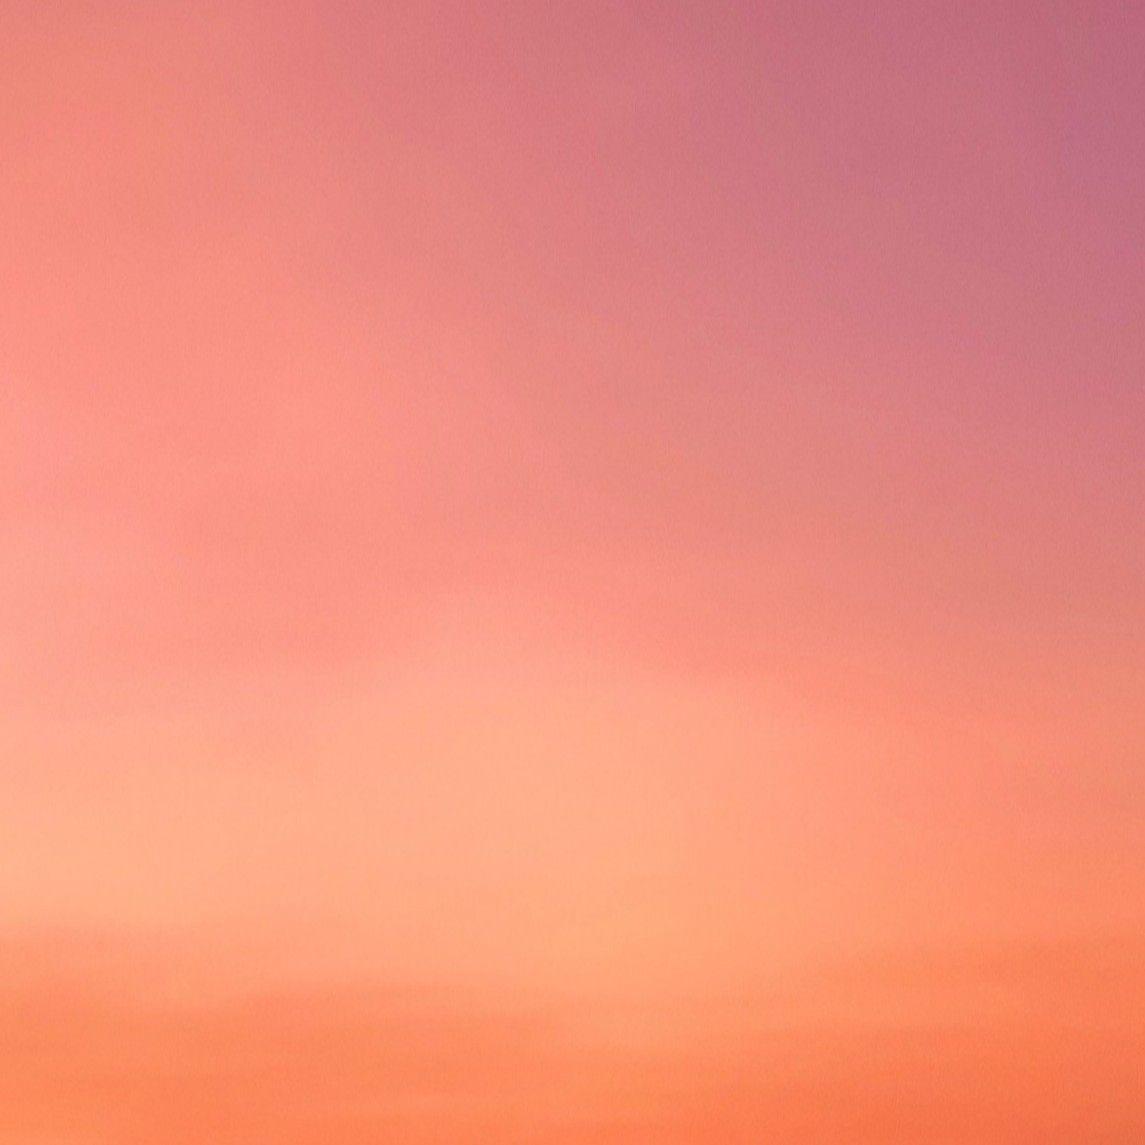 Đừng bỏ qua cơ hội để tải xuống những hình nền màu hồng cam đẹp nhất hiện nay. Hãy truy cập hình ảnh để tìm kiếm các bức ảnh miễn phí, phục vụ cho nhu cầu cá nhân của bạn.